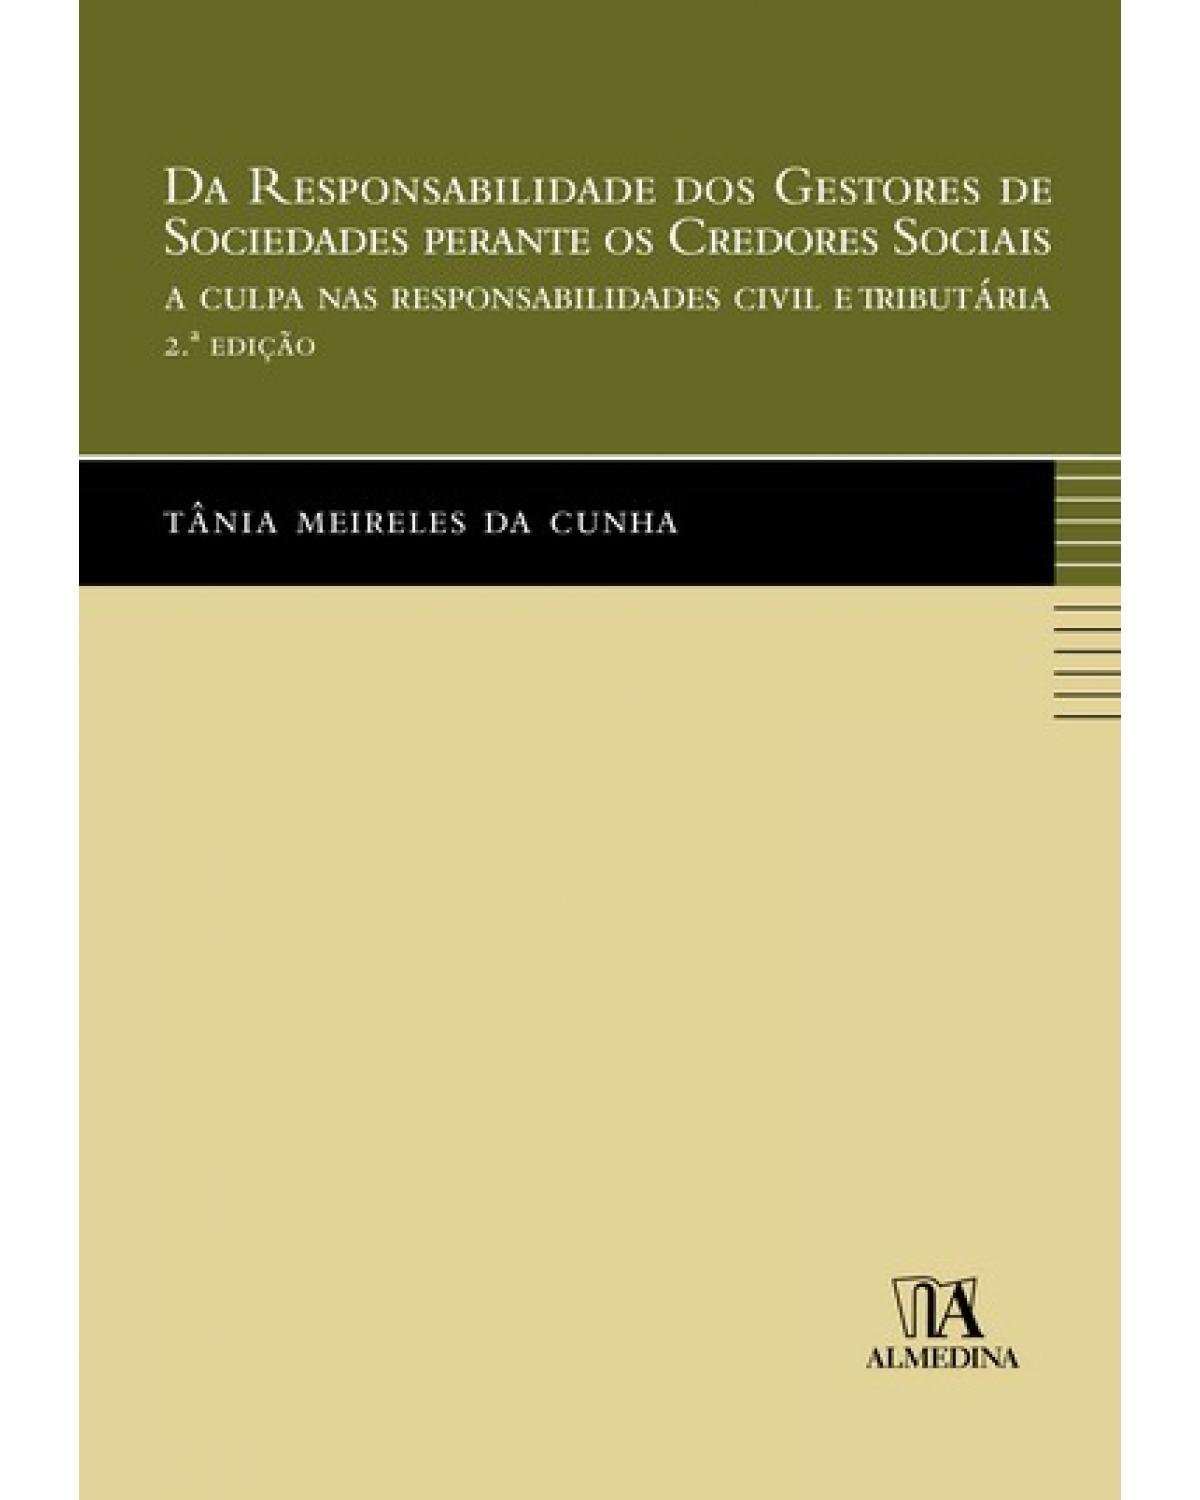 Da responsabilidade dos gestores de sociedades perante os credores sociais - a culpa nas responsabilidades civil e tributária - 2ª Edição | 2009